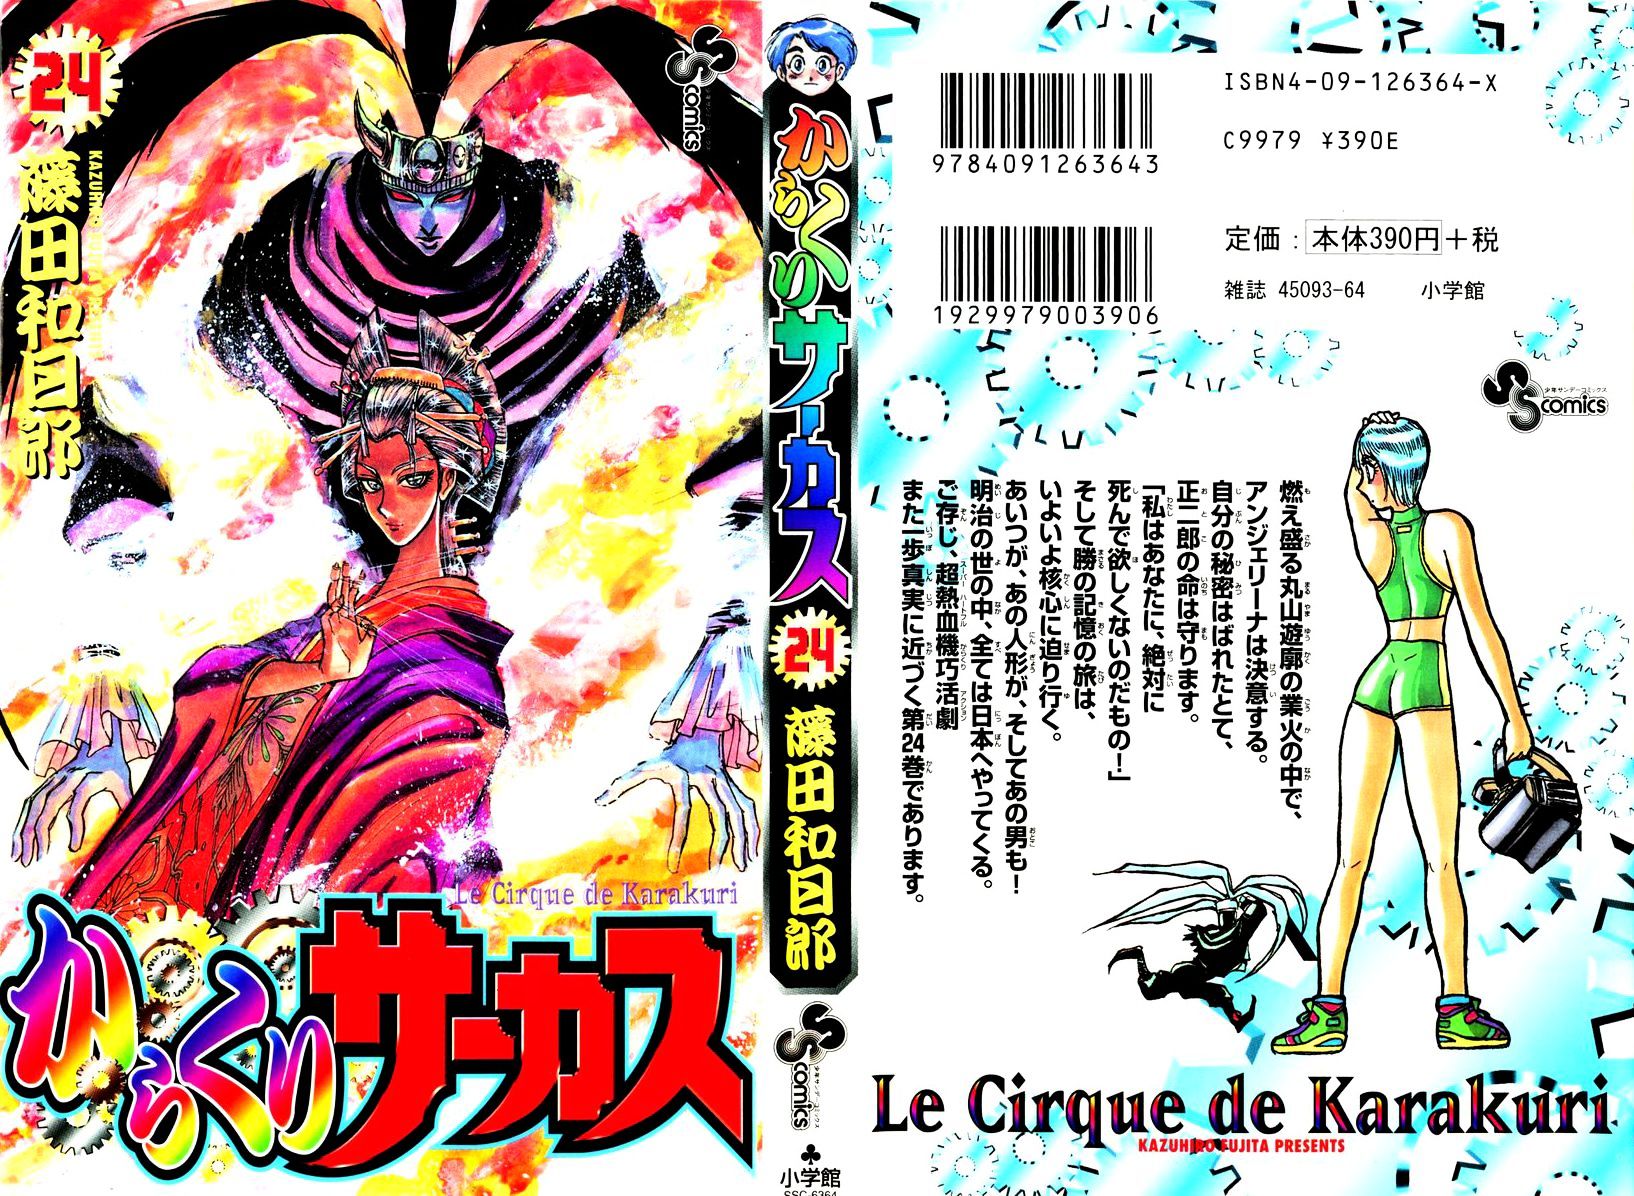 Karakuri Circus Chapter 227 : Circus〜Final Act—Act 15: The Burning Brothel - Picture 1